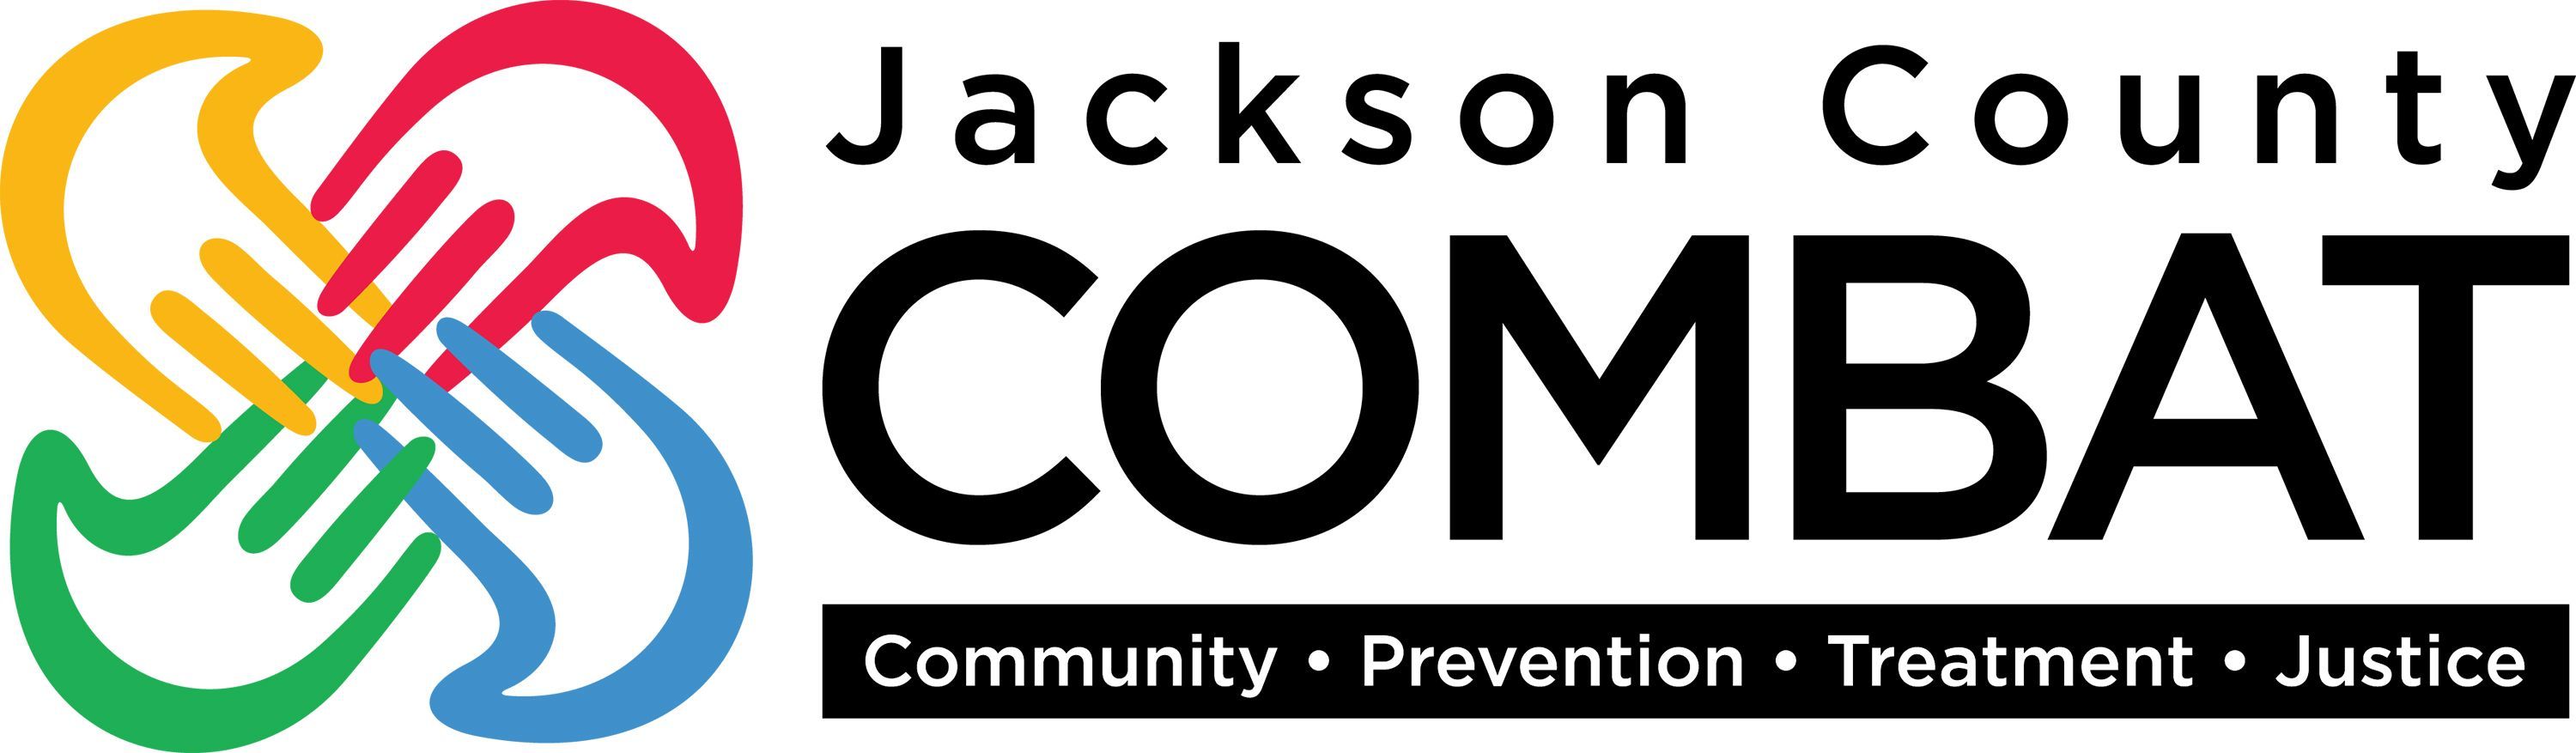 Jackson County COMBAT